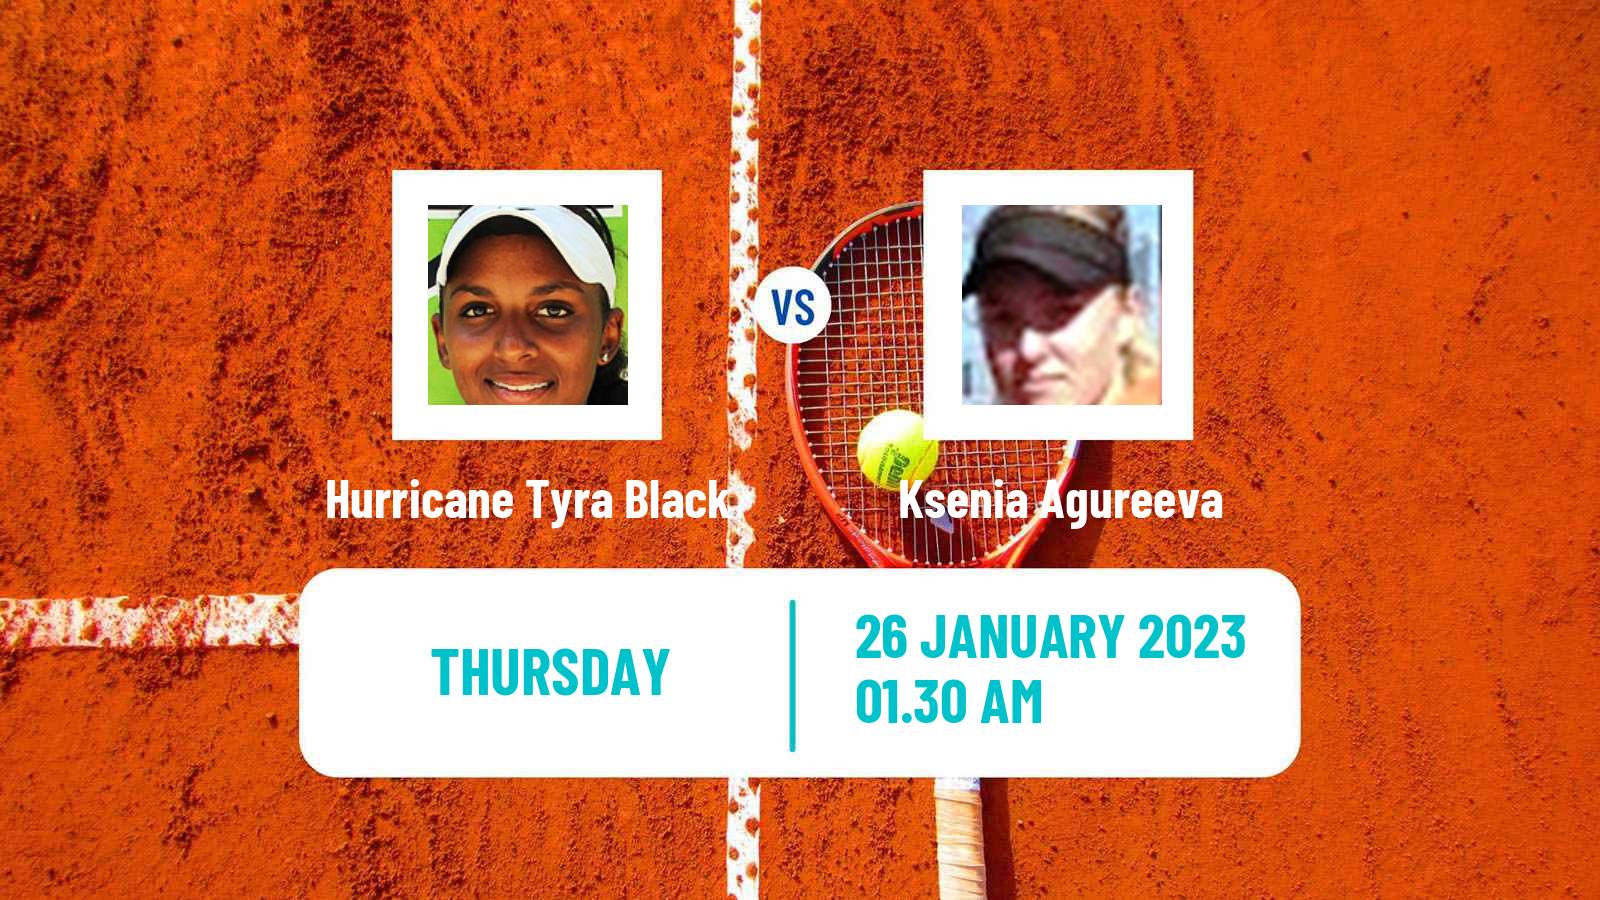 Tennis ITF Tournaments Hurricane Tyra Black - Ksenia Agureeva